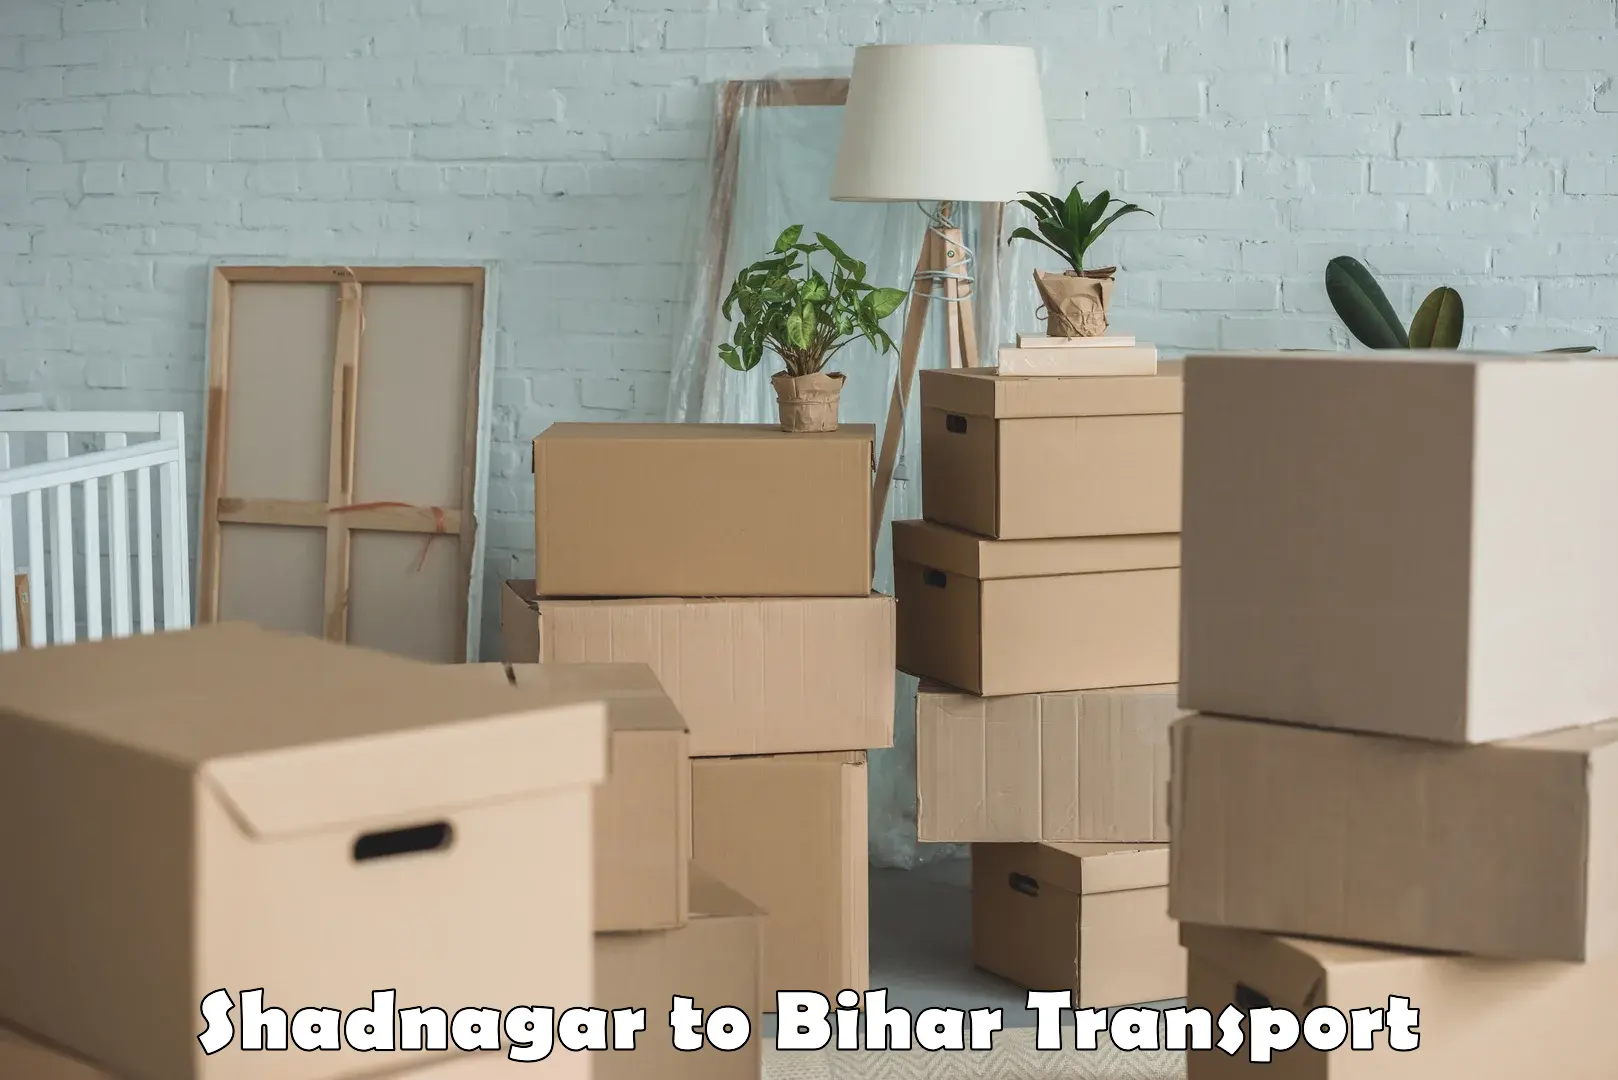 Part load transport service in India Shadnagar to Bihar